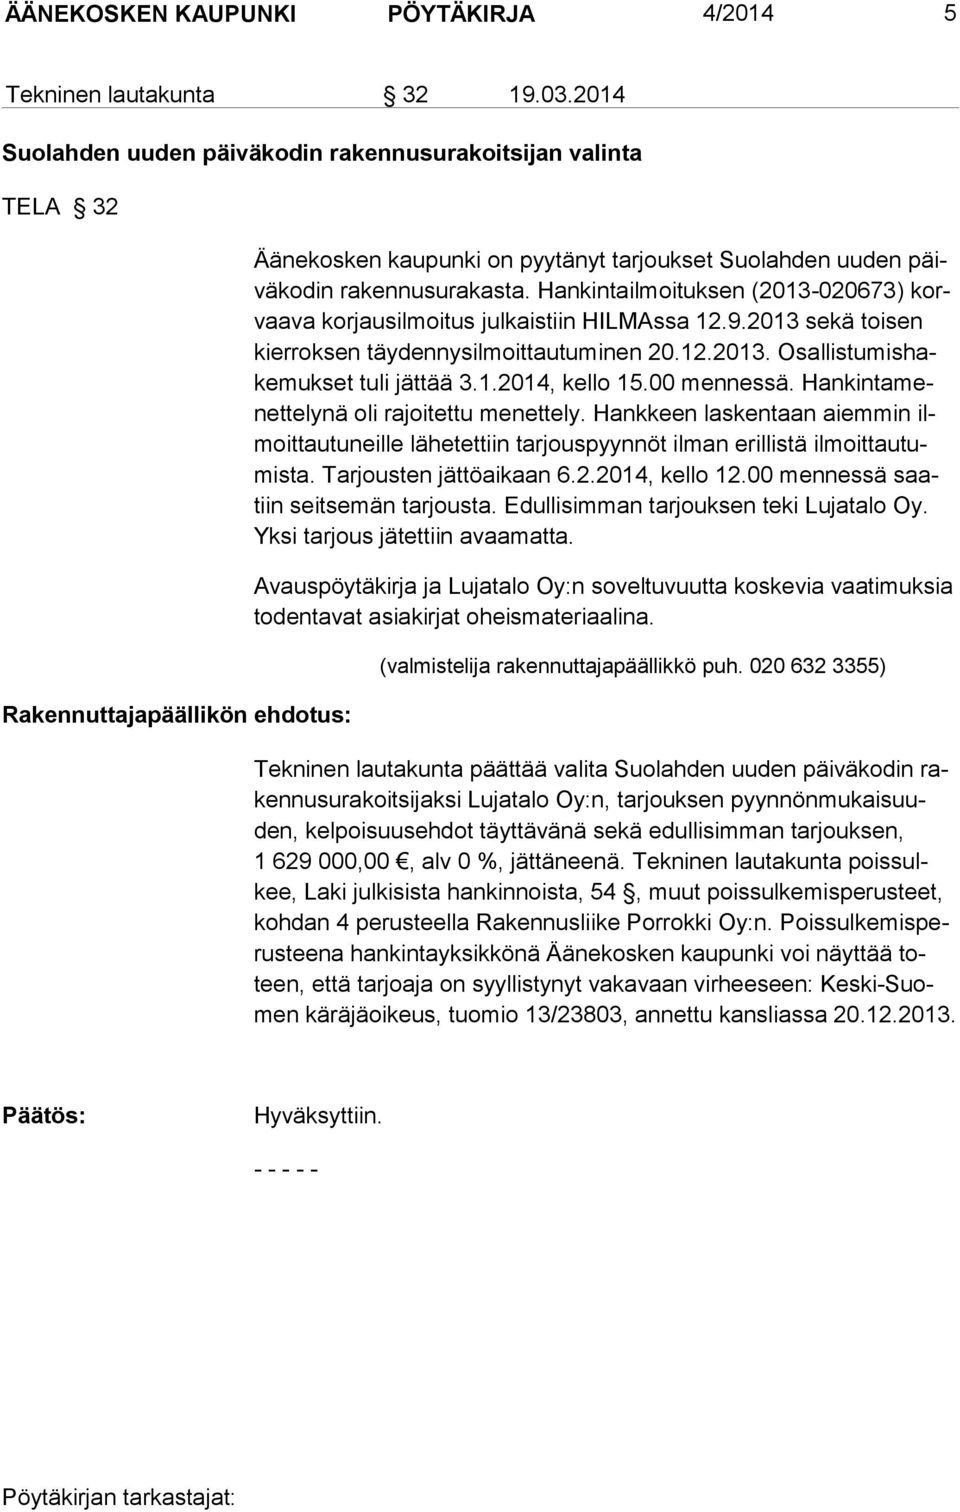 Hankintailmoituksen (2013-020673) korvaava korjausil moitus julkais tiin HILMAssa 12.9.2013 sekä toisen kier roksen täydennysil moittautuminen 20.12.2013. Osallistumishakemukset tuli jättää 3.1.2014, kello 15.